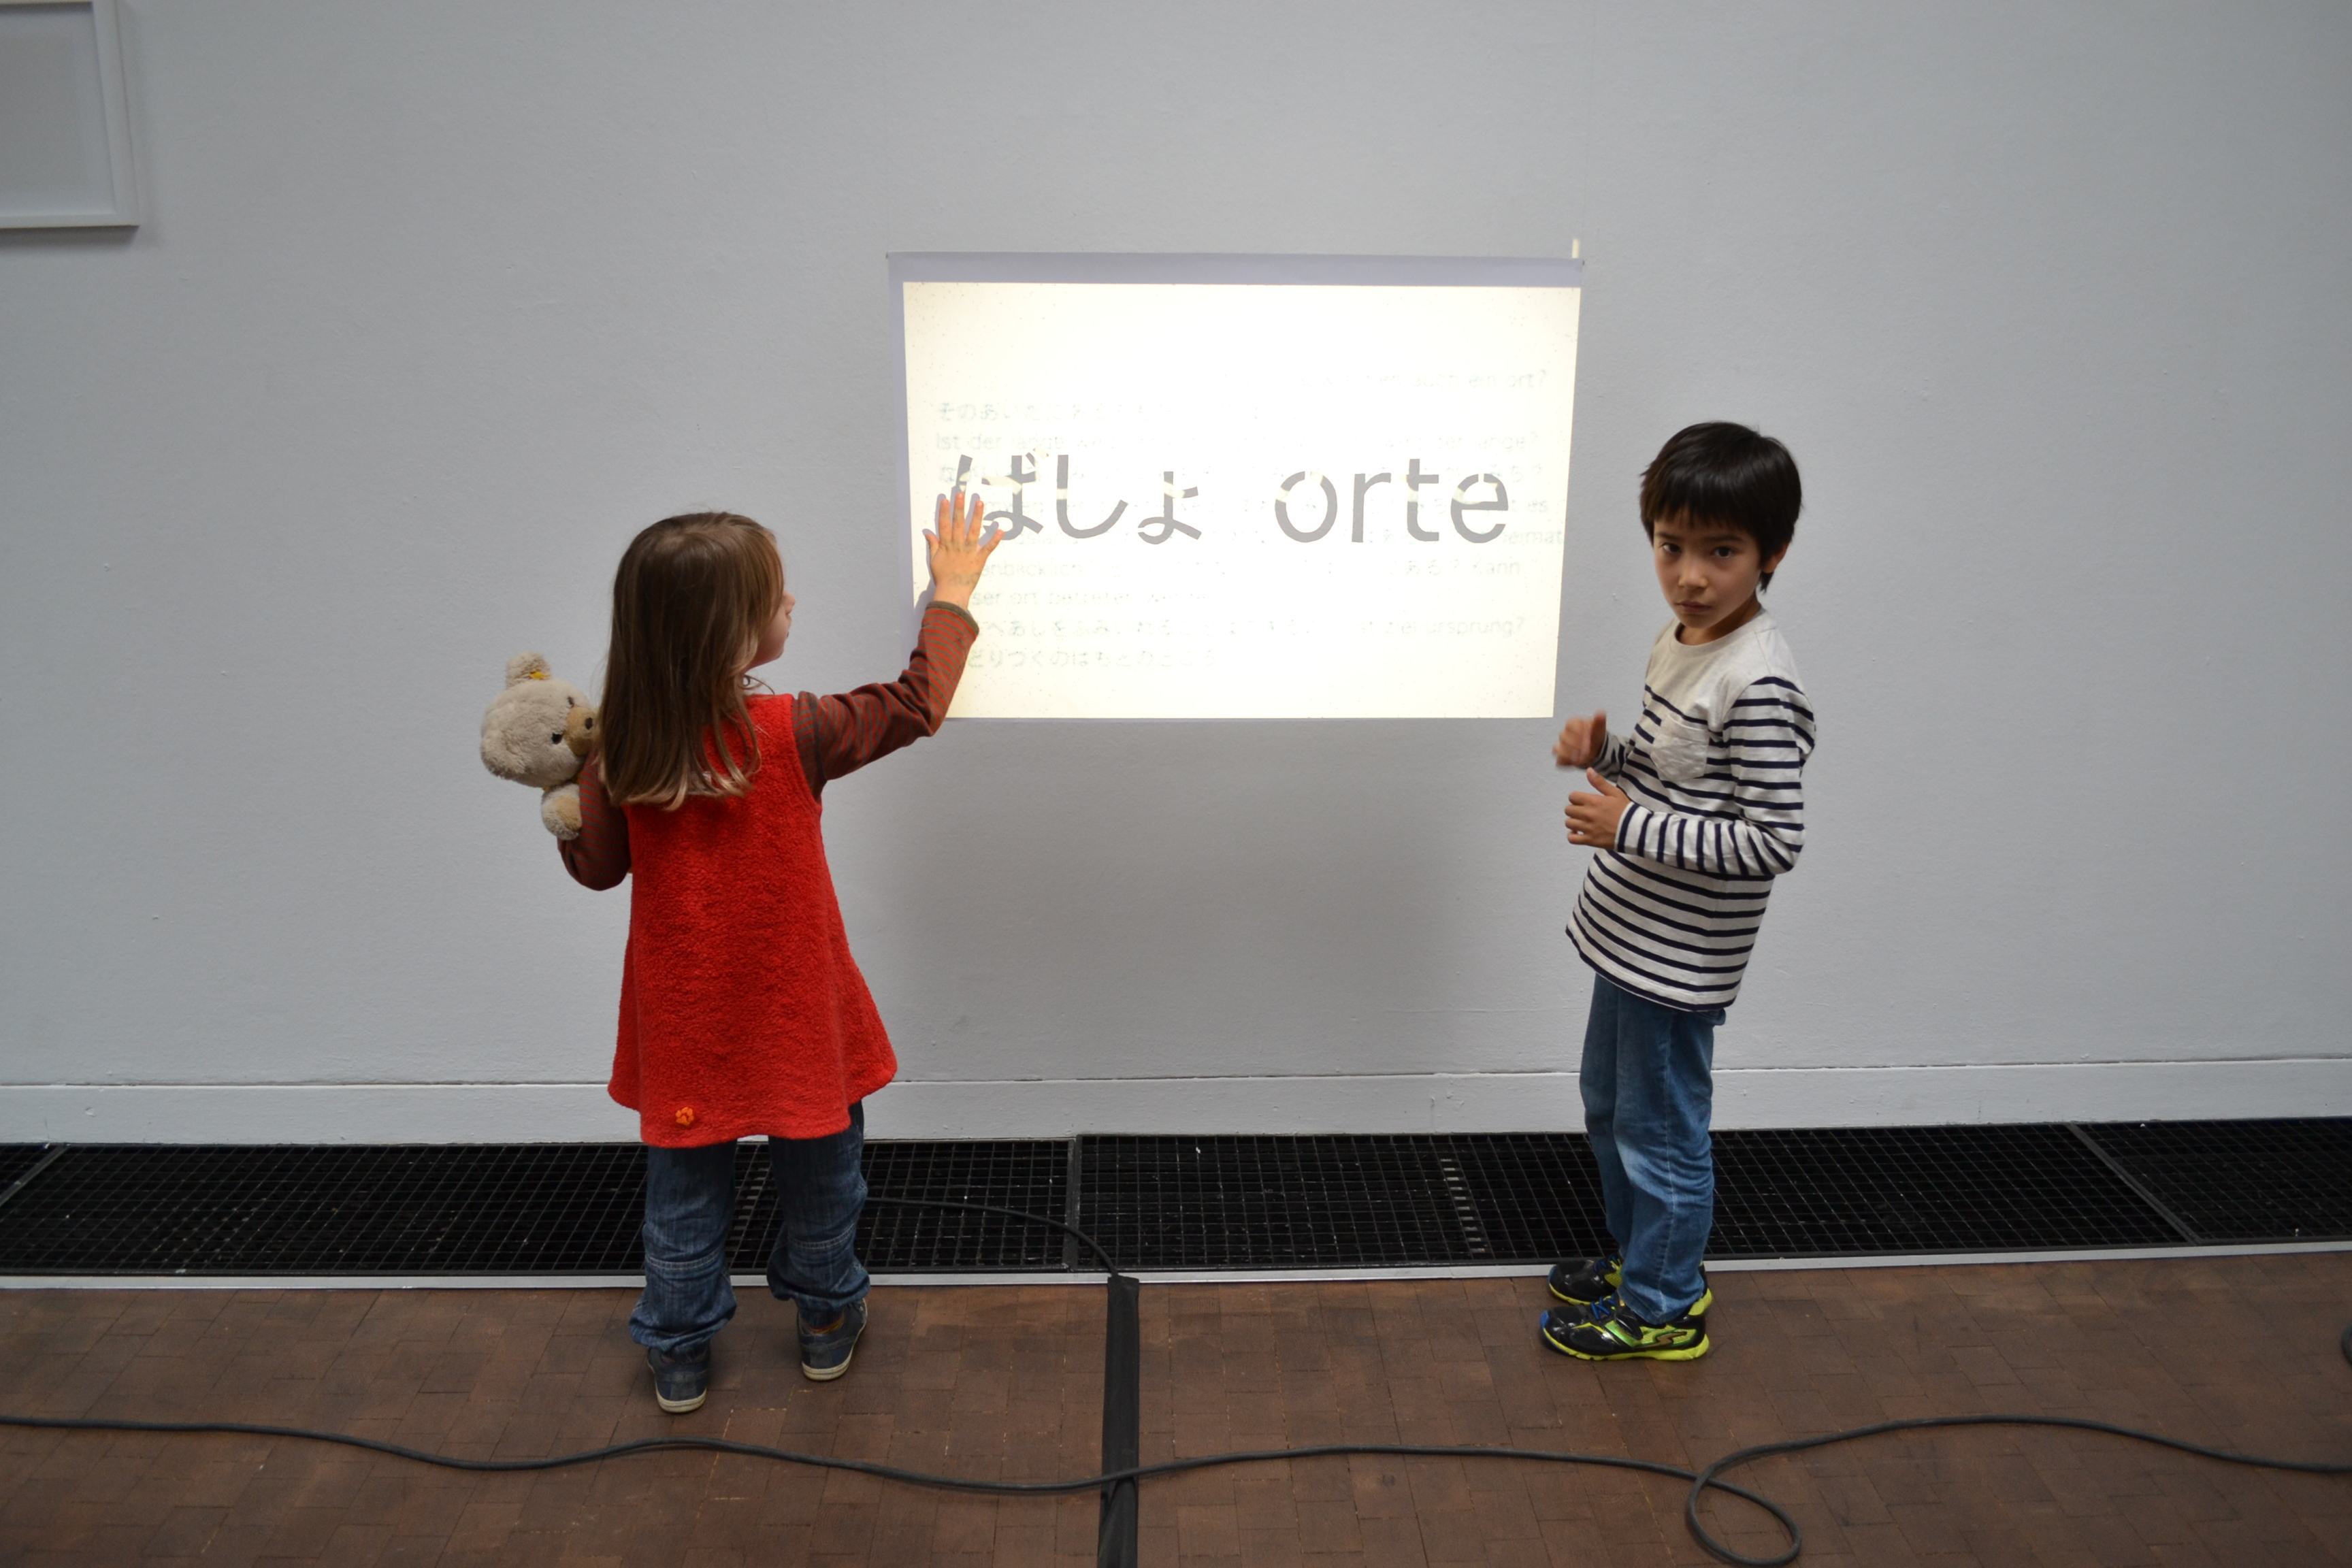 Zwei Kinder stehen vor einem projizierten Bild mit Schrift